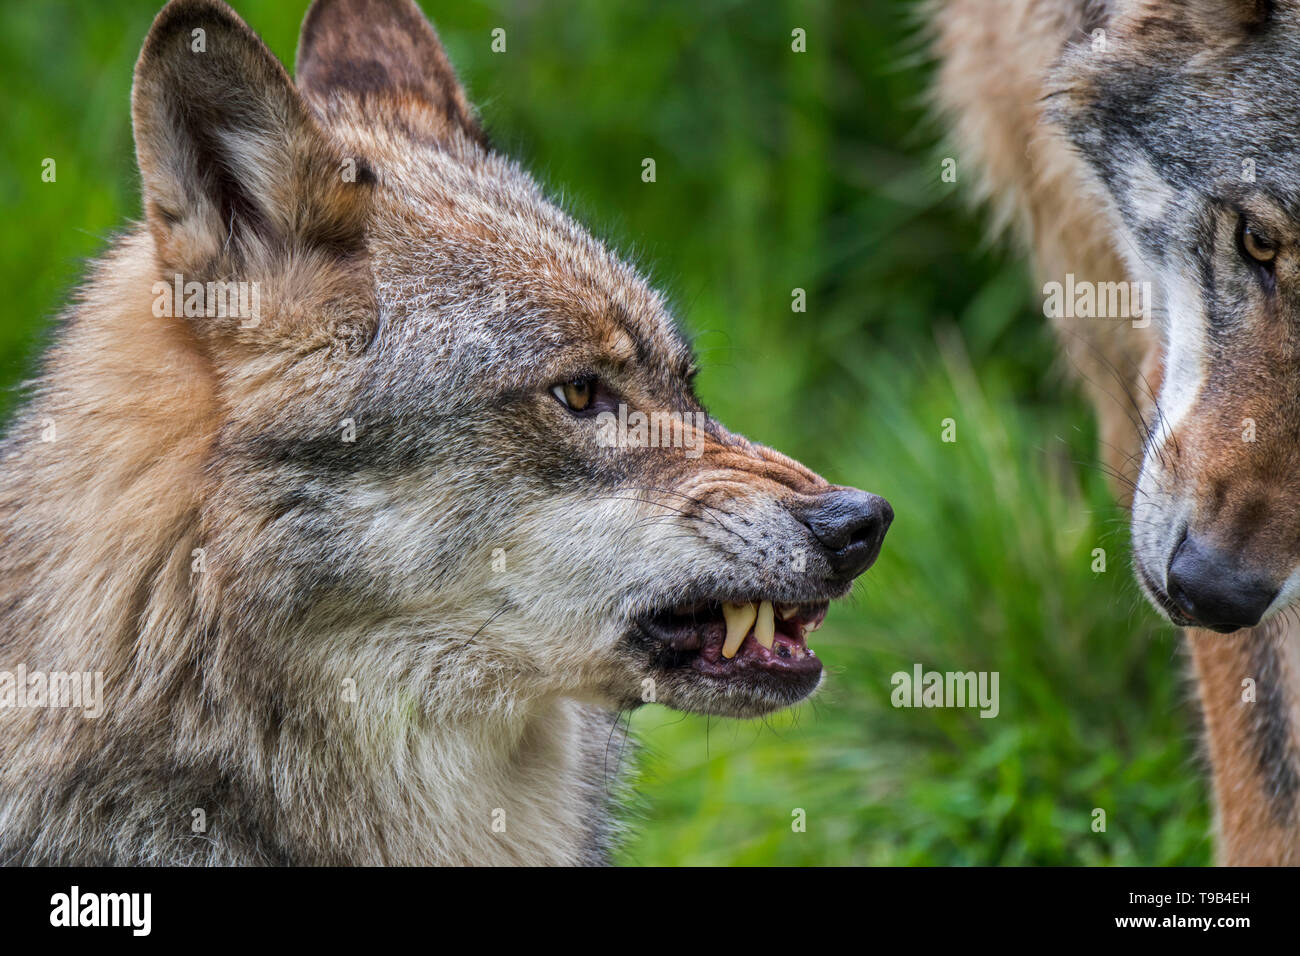 Fâché, confiant et dominants de wolf (Canis lupus) montrant les oreilles en position haute, le nez plissé et découvrant ses crocs tout en grondant / voitures. Banque D'Images